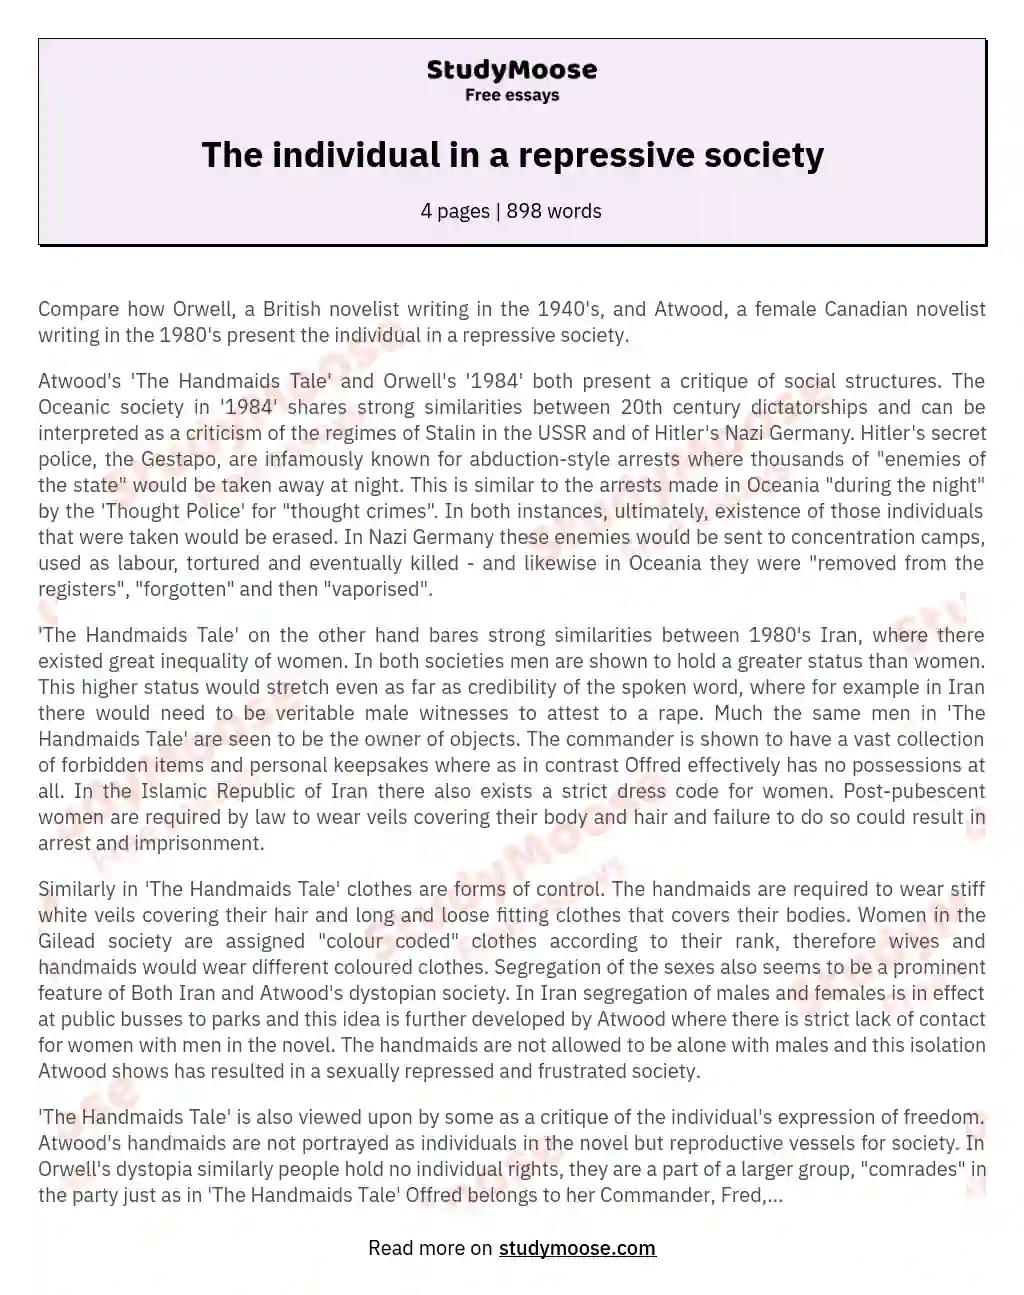 The individual in a repressive society essay